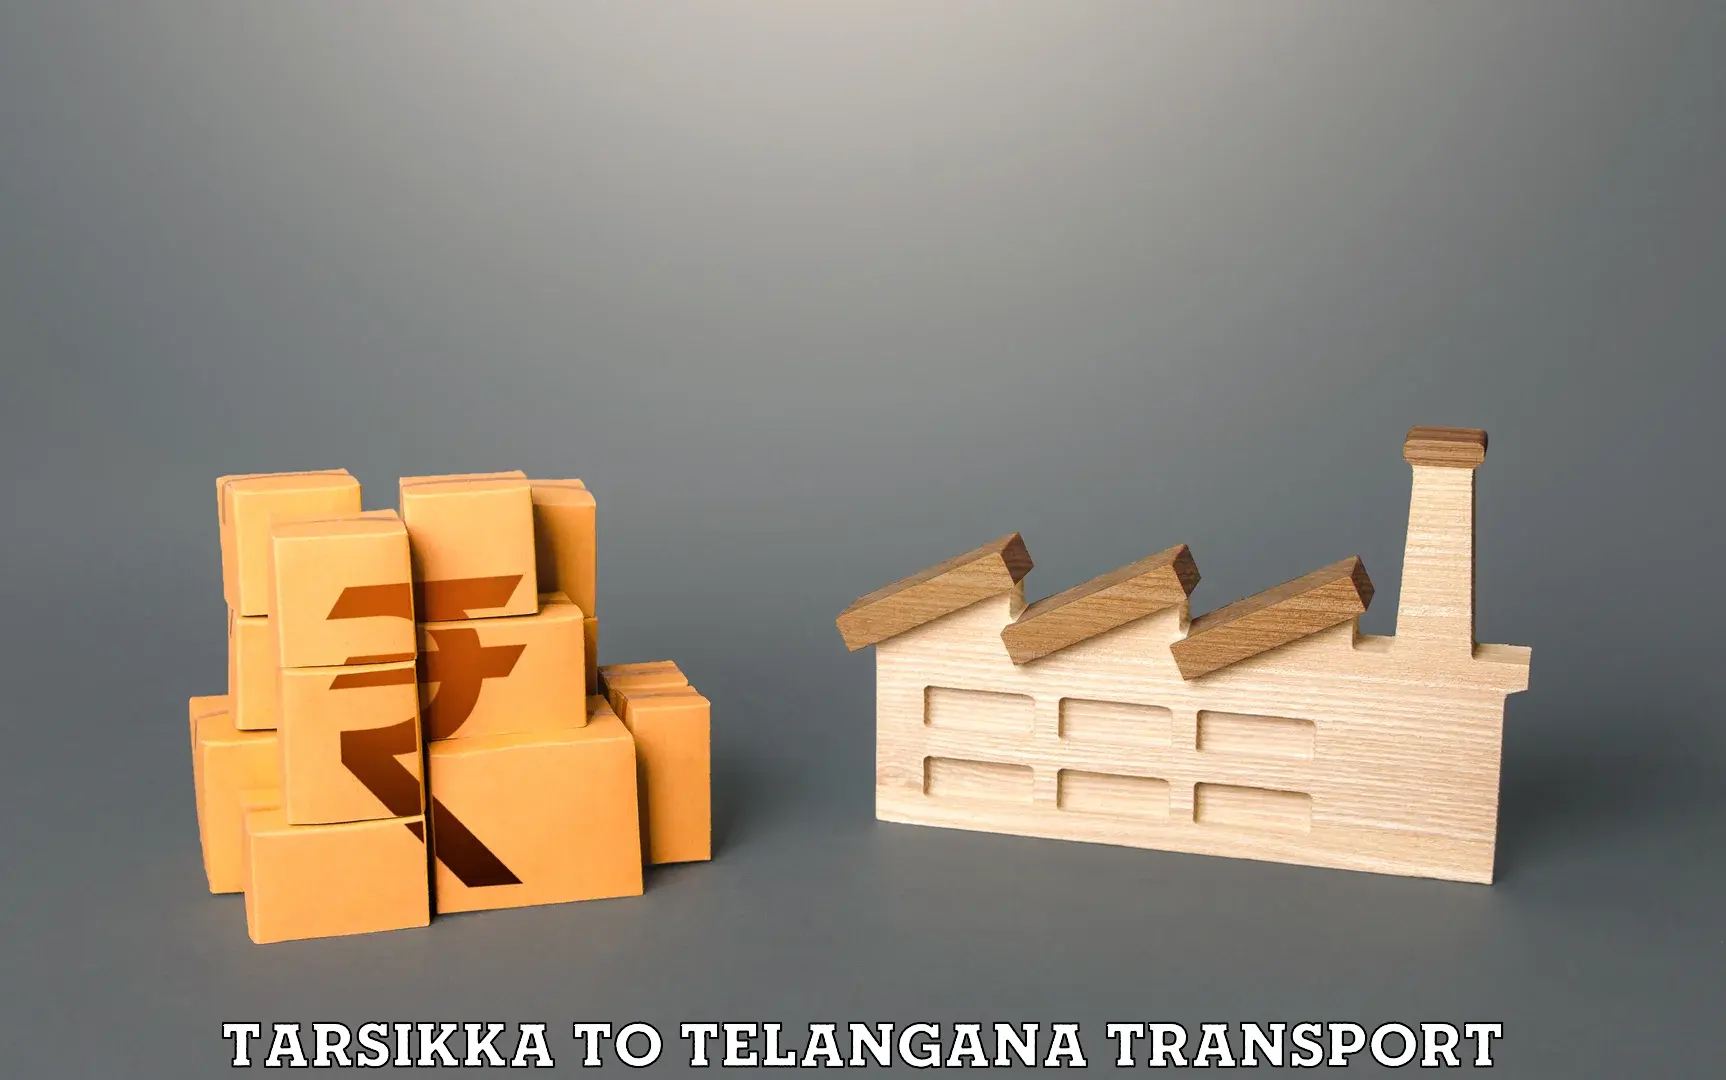 Transport in sharing in Tarsikka to Aswaraopeta